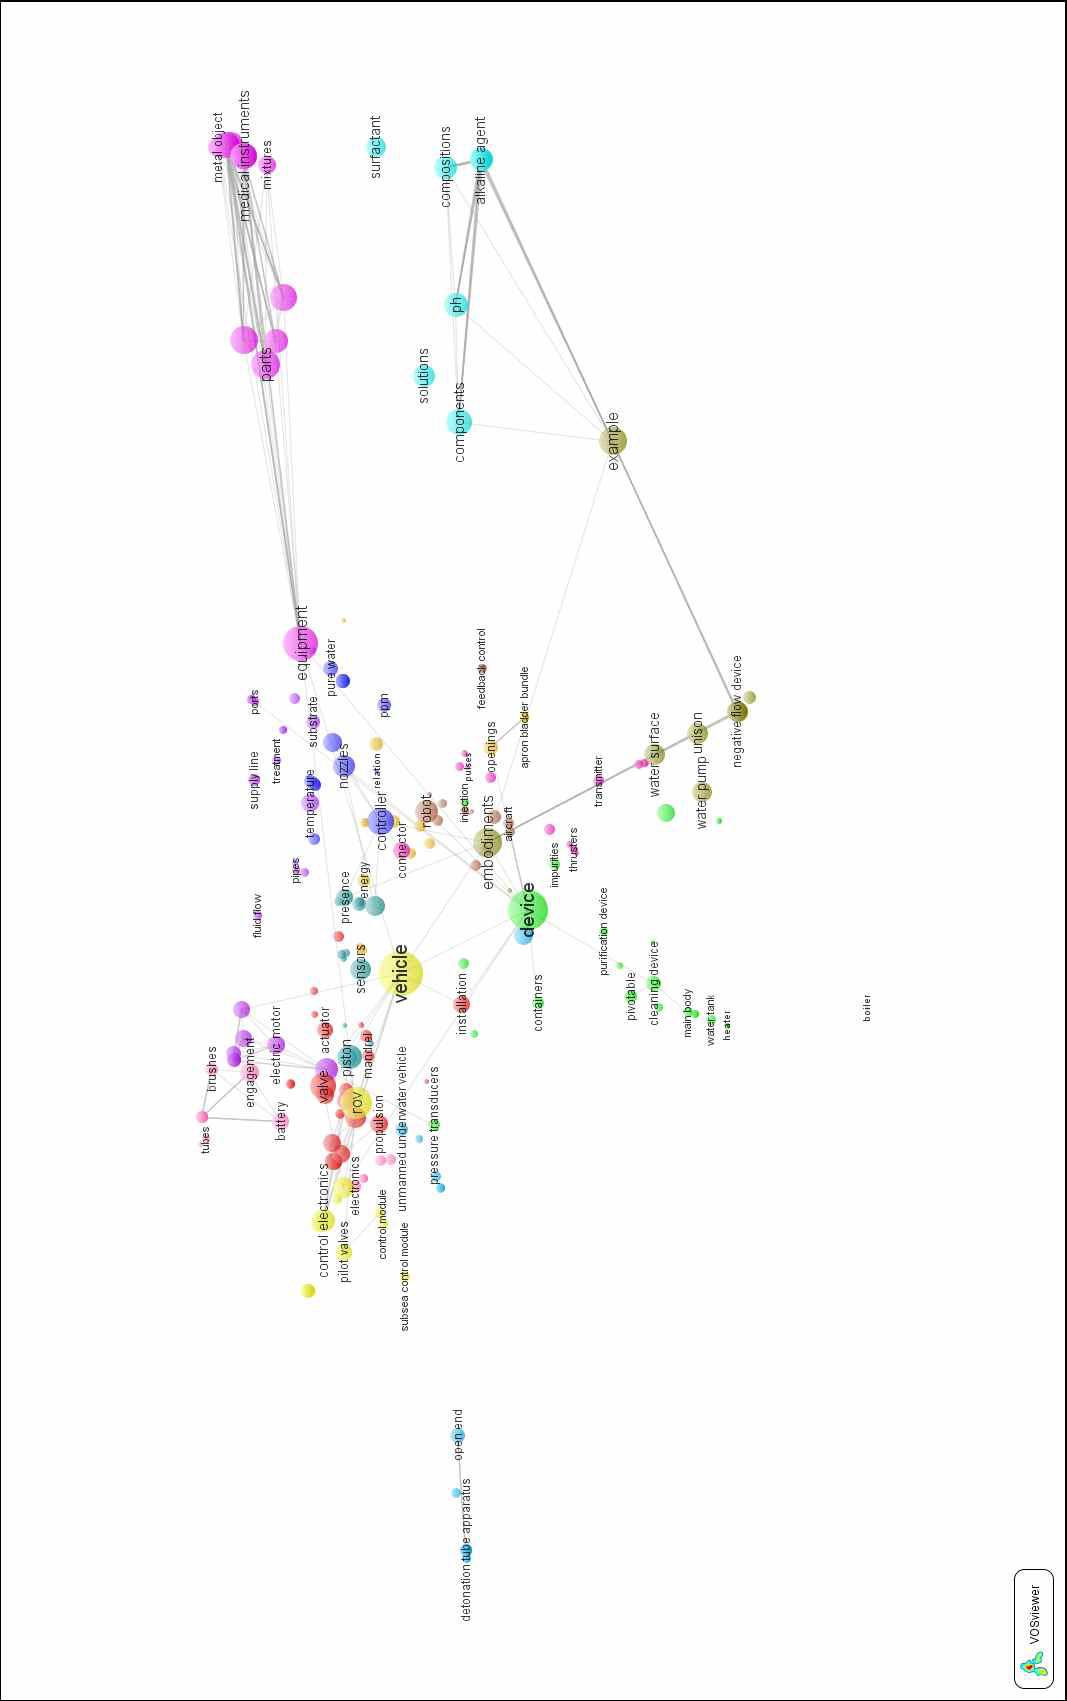 수중청소로봇 관련 키워드 분포맵 (2008~2012, Label View)